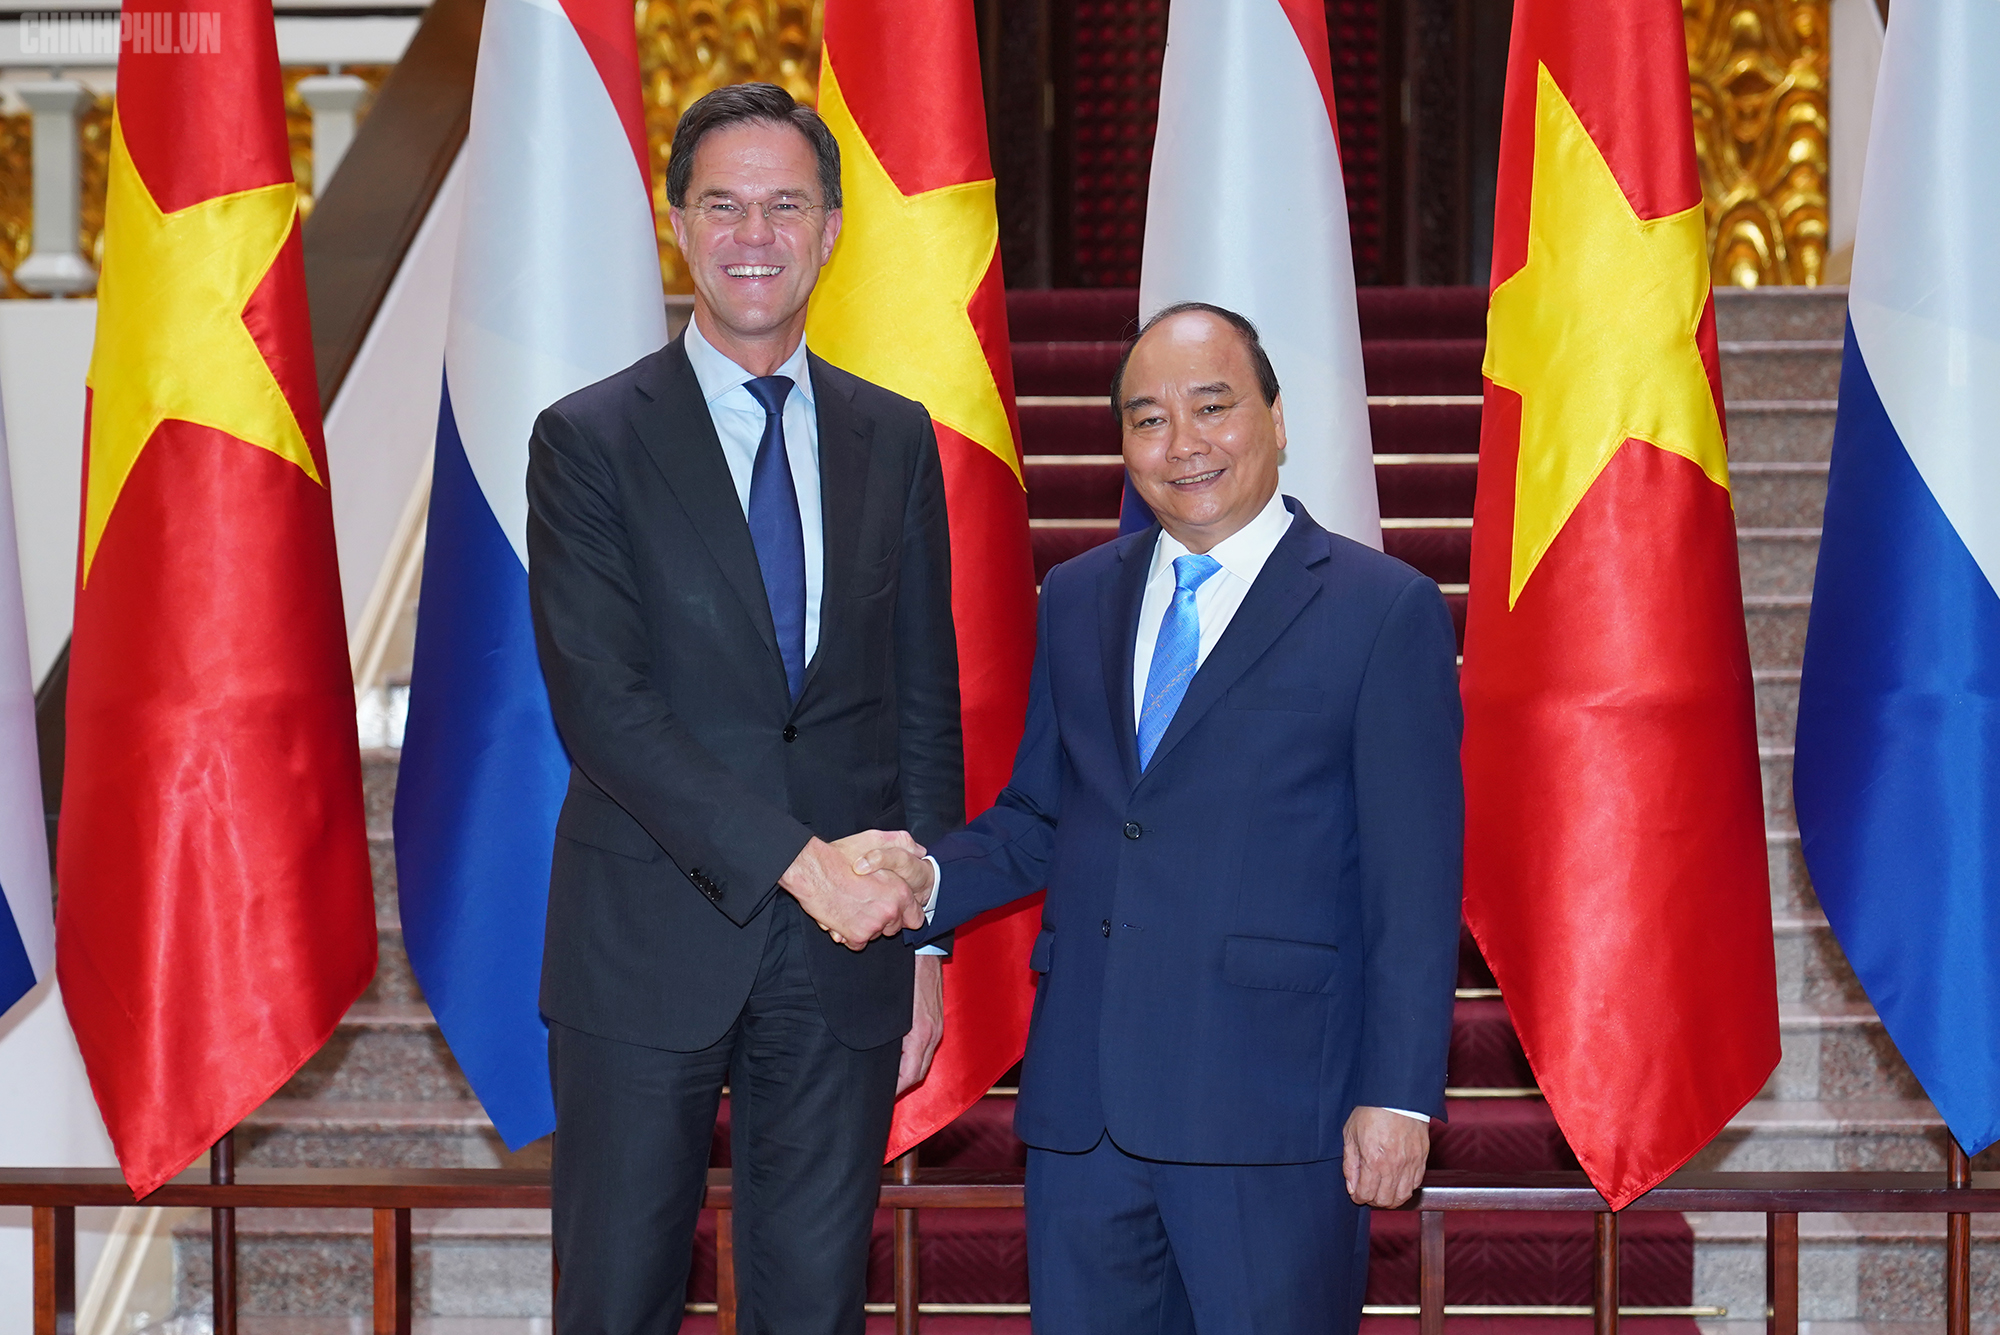 Thủ tướng Nguyễn Xuân Phúc luôn là người đại diện cho sự đoàn kết và phát triển của đất nước. Hình ảnh về Thủ tướng sẽ giúp chúng ta nhận thức rõ hơn về những nỗ lực và thành tựu của chính quyền và dân tộc Việt Nam trong những năm qua.